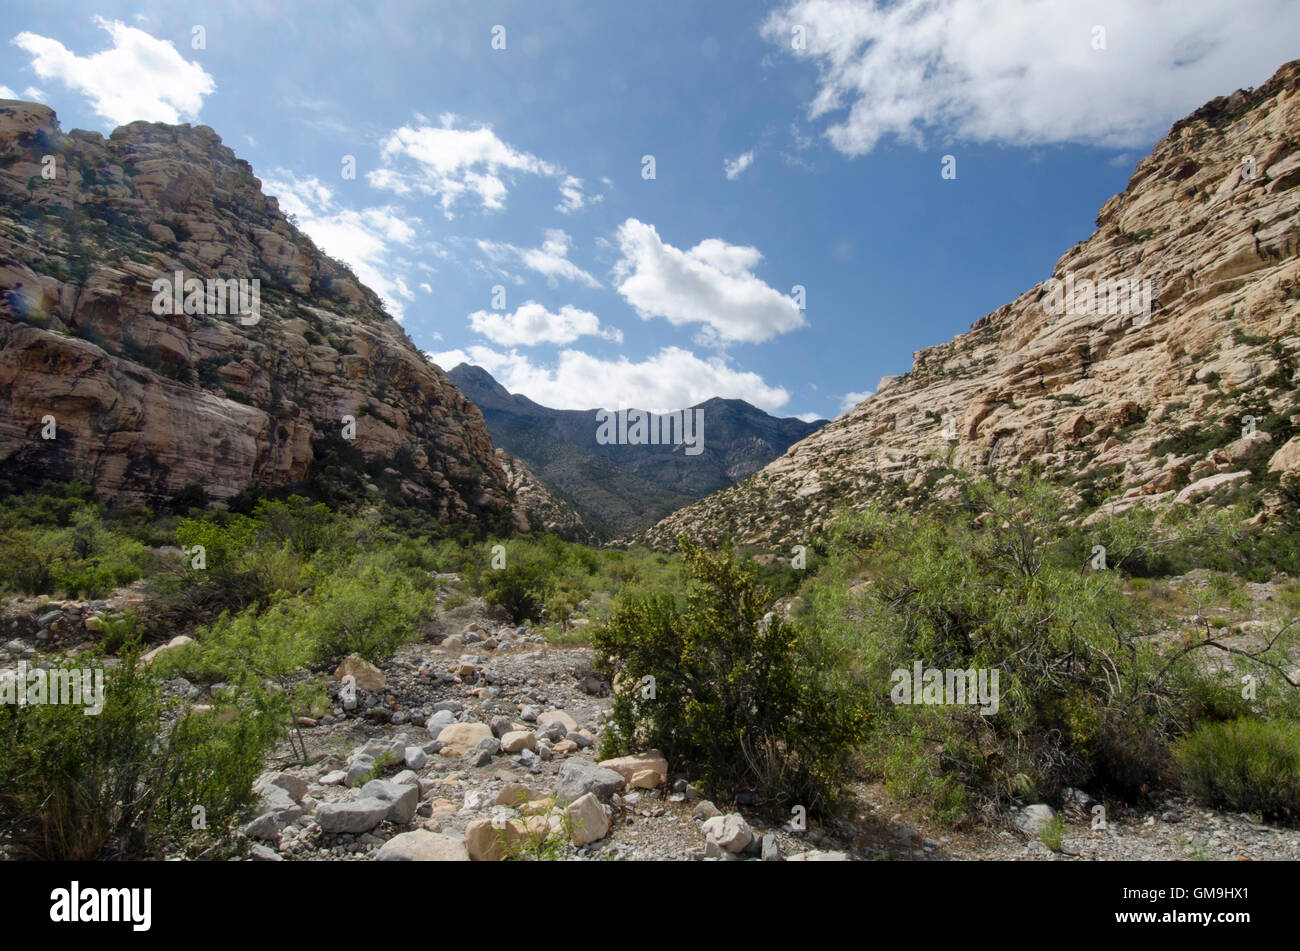 Le Nevada, Red Rock Canyon, Paysage avec montagnes rock Banque D'Images